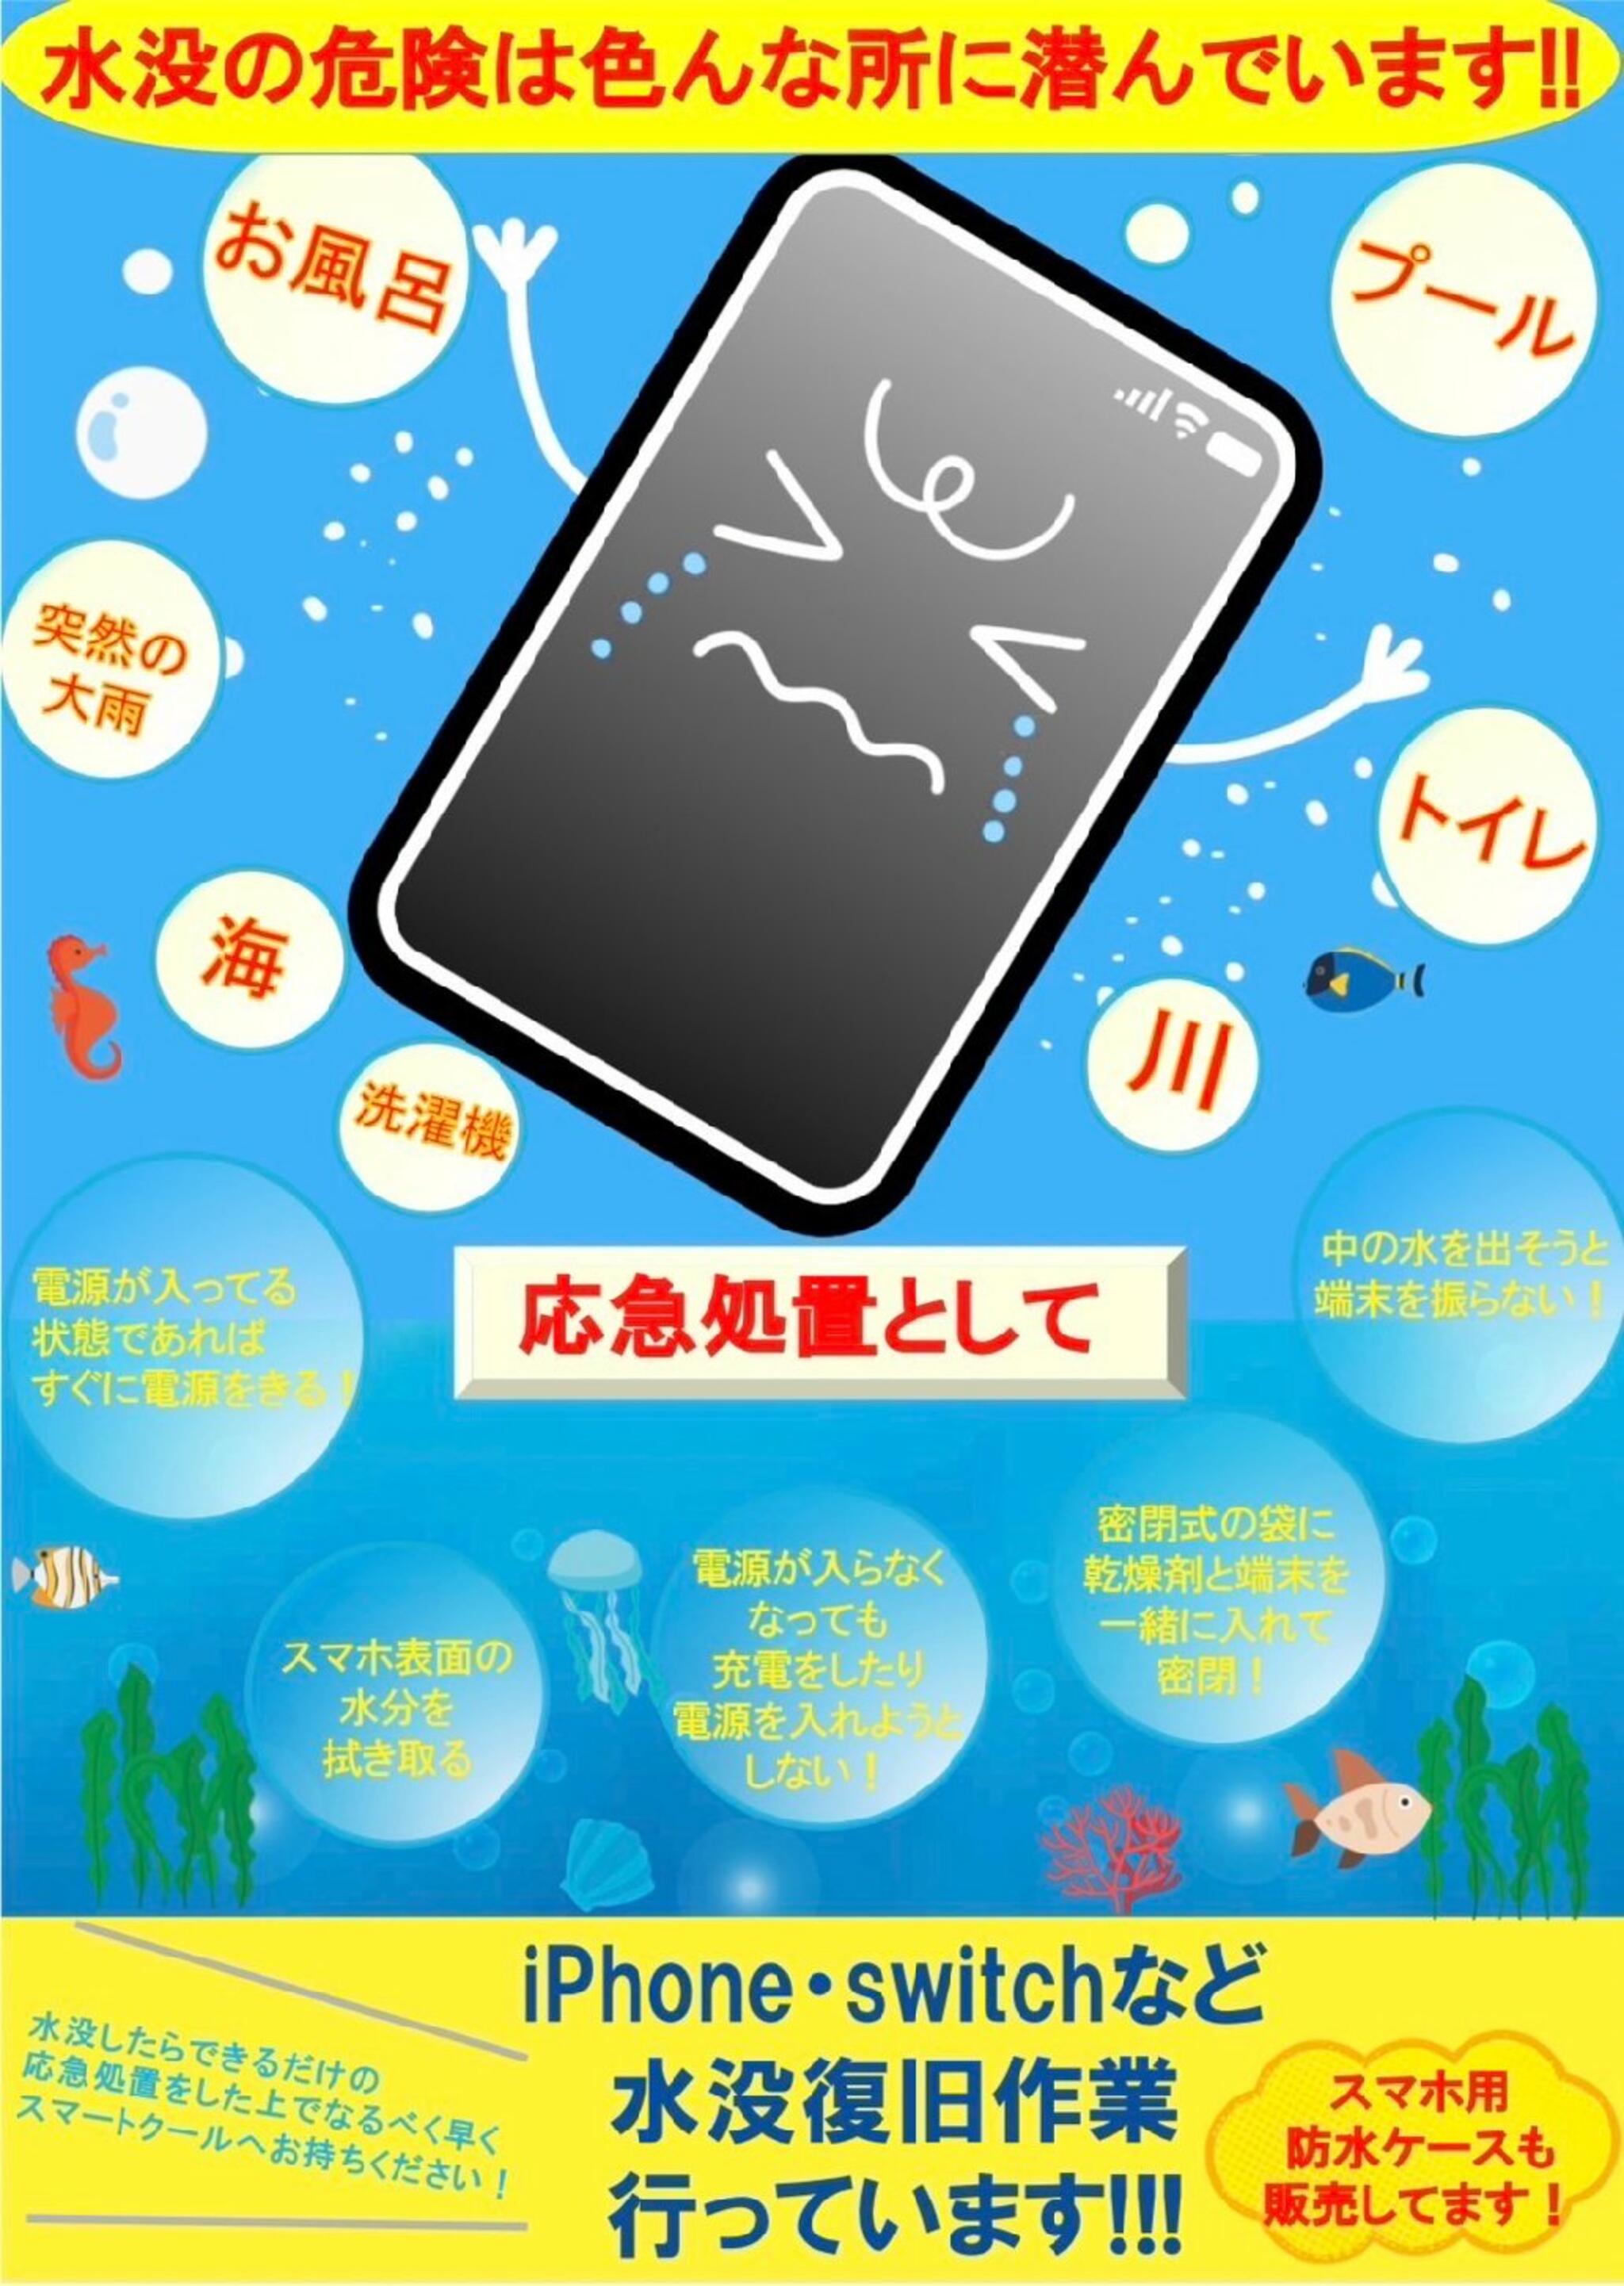 iPhone・iPad・Switch修理店 スマートクール イオンモール広島祇園店からのお知らせ( 雨の日 はスマートフォンの水没にご注意ください！！ )に関する写真